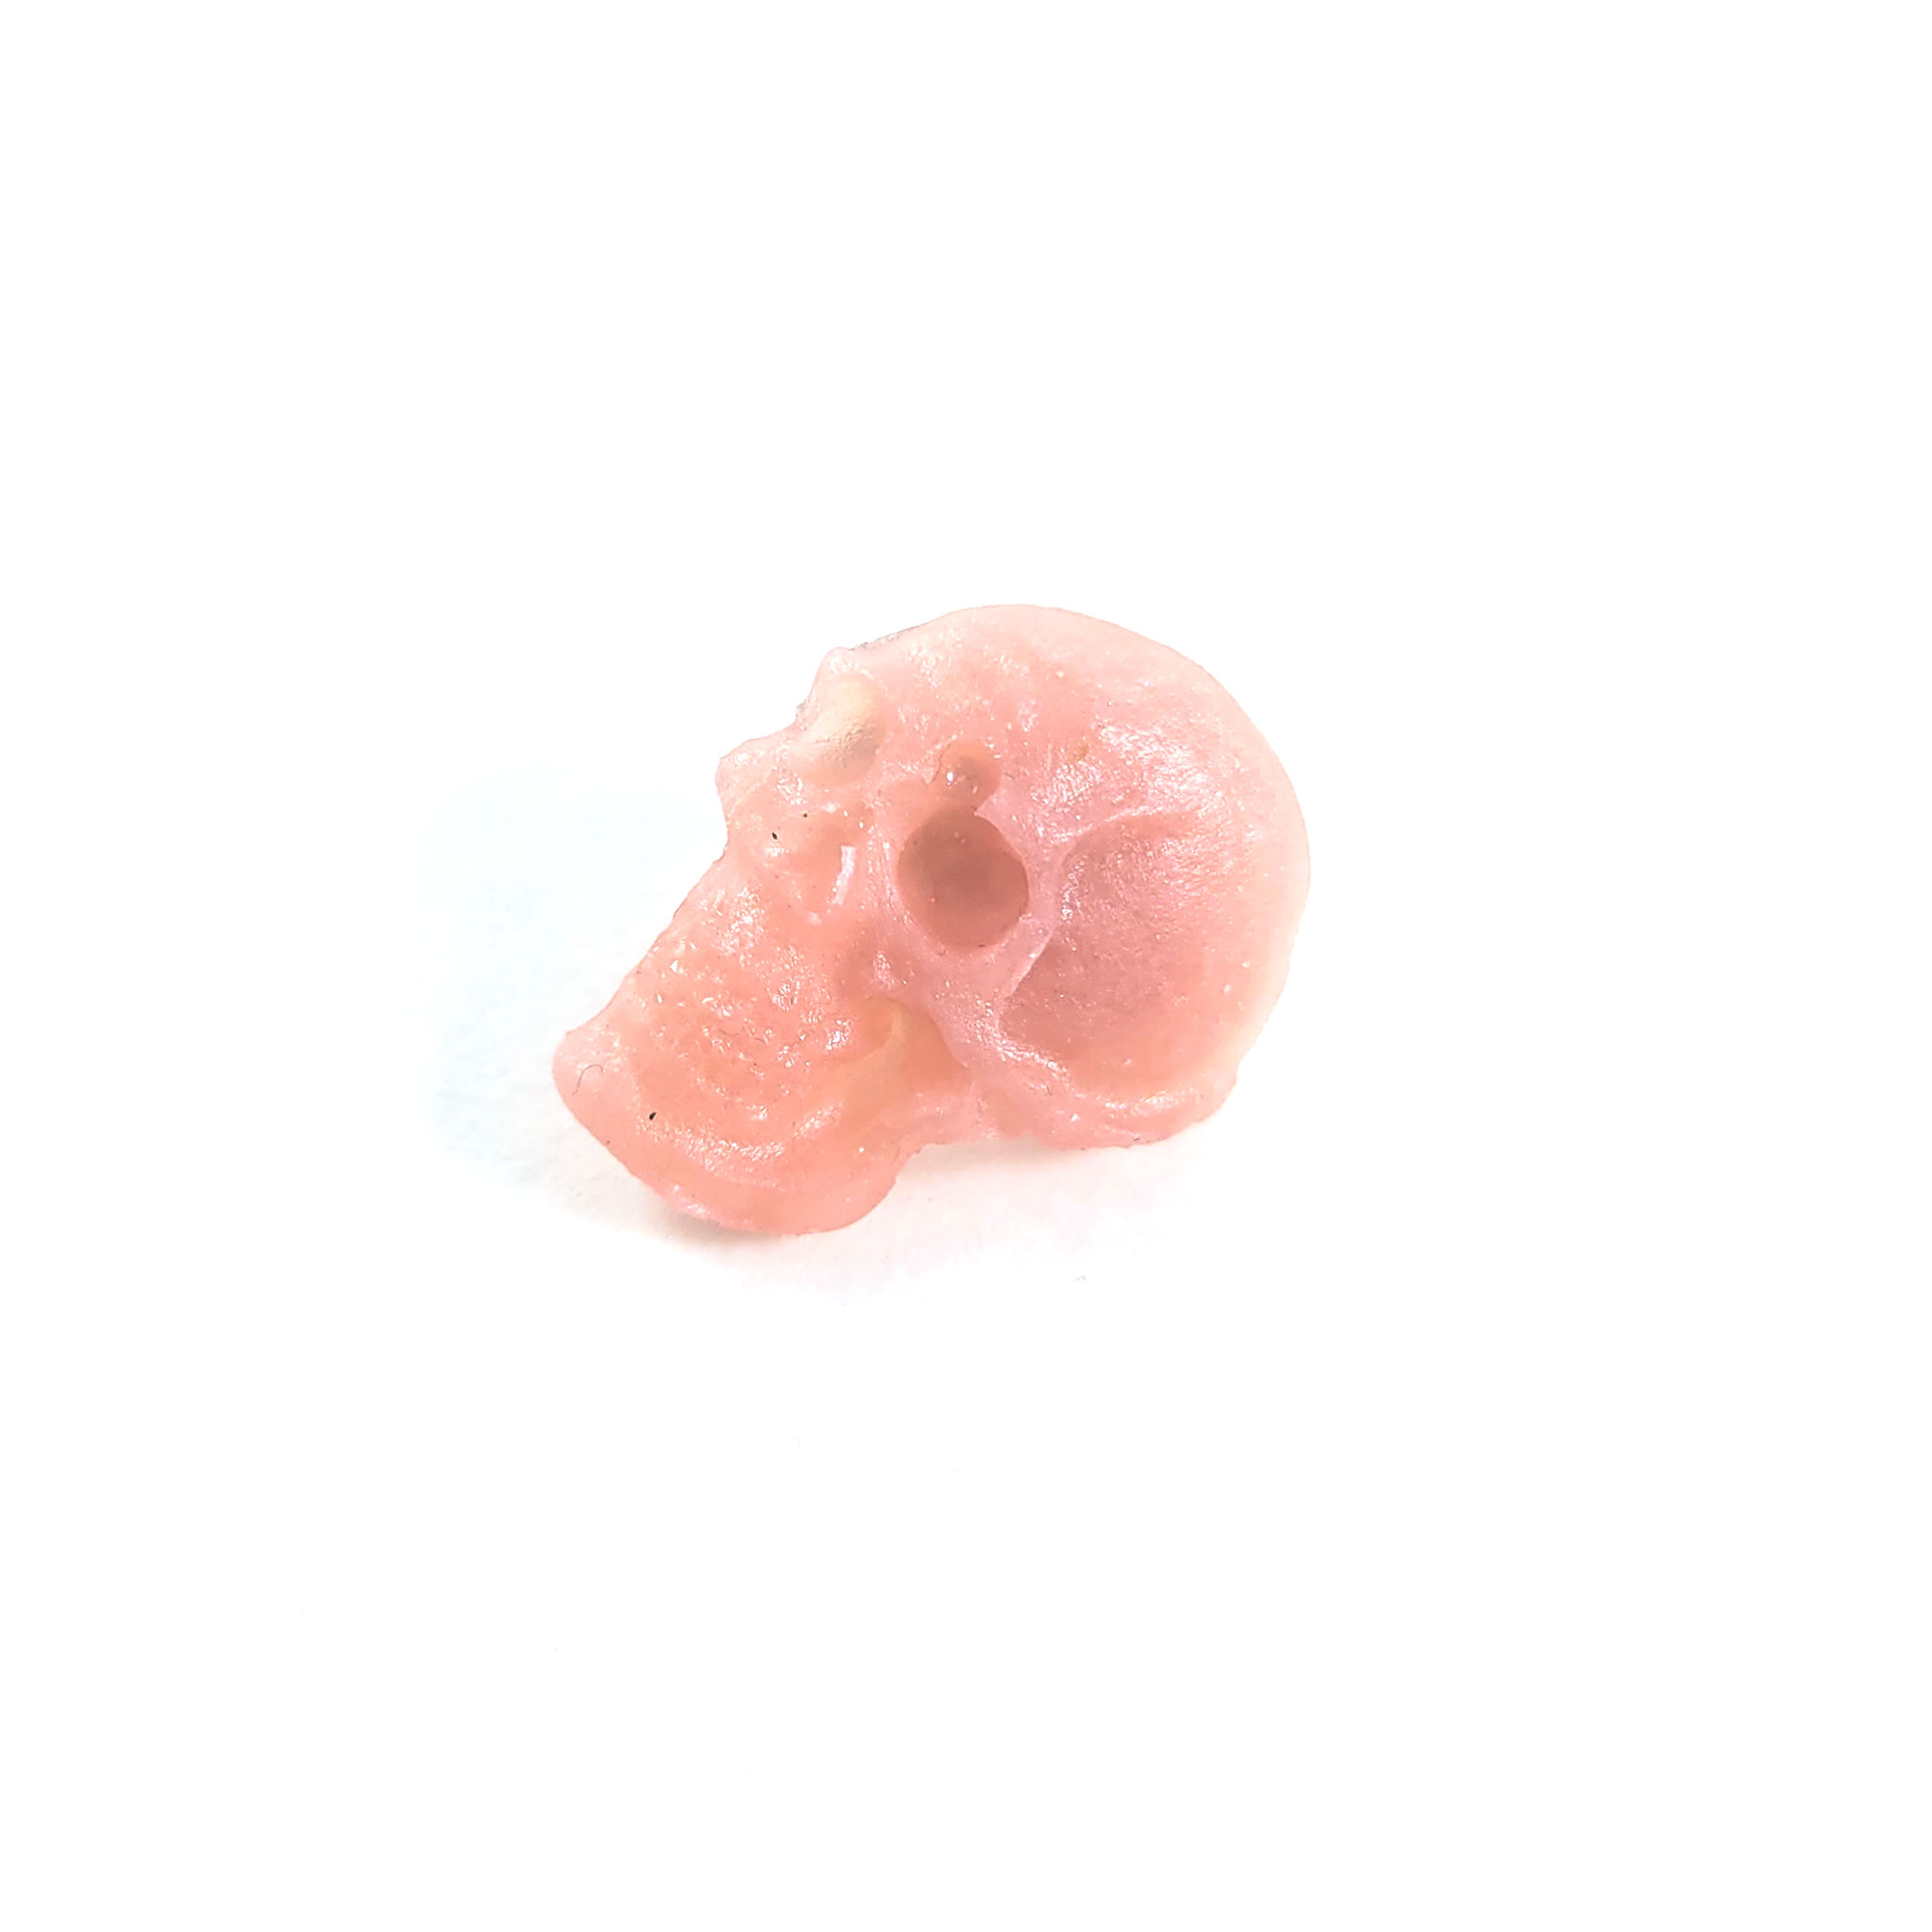 Peach Skull Statement Pin by Wilde Designs